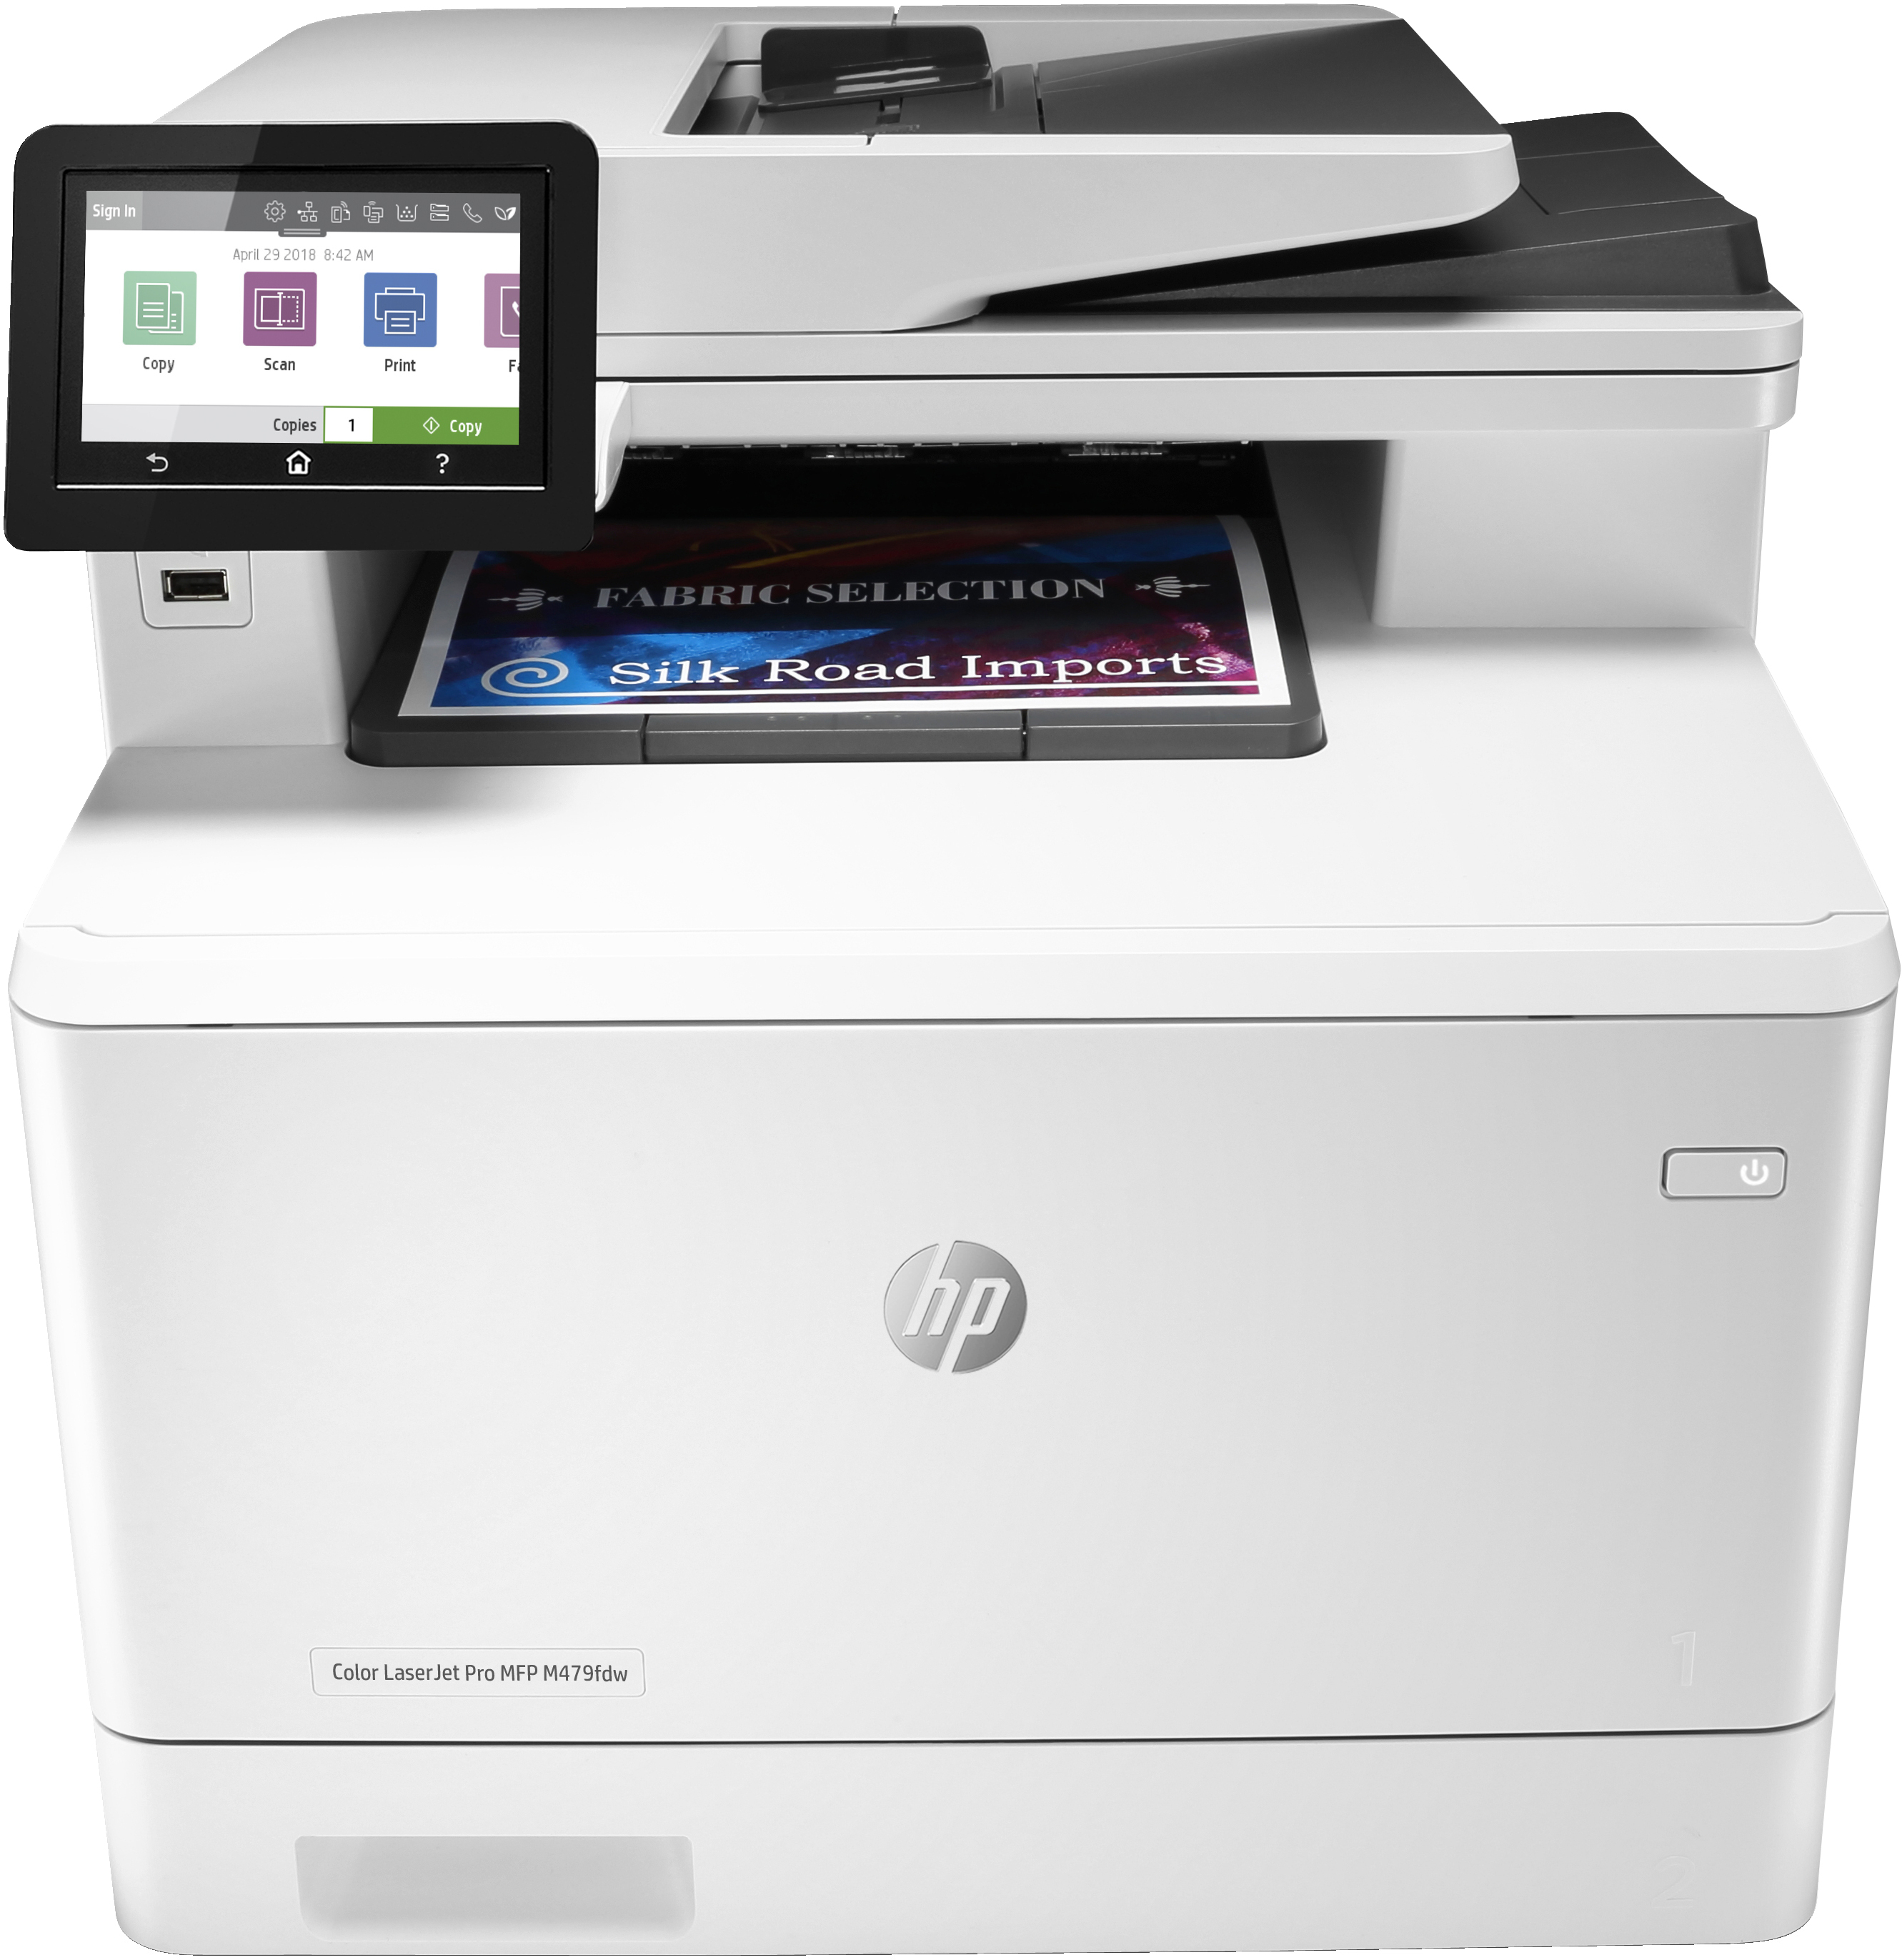 HP HP Color LaserJet Pro MFP M479fdw, Kleur, Printer voor Printen, kopi&#235;ren, scannen, fax, e-mail, Scannen naar e-mail/pdf; Dubbelzijdig printen; ADF voor 50 vel ongekruld